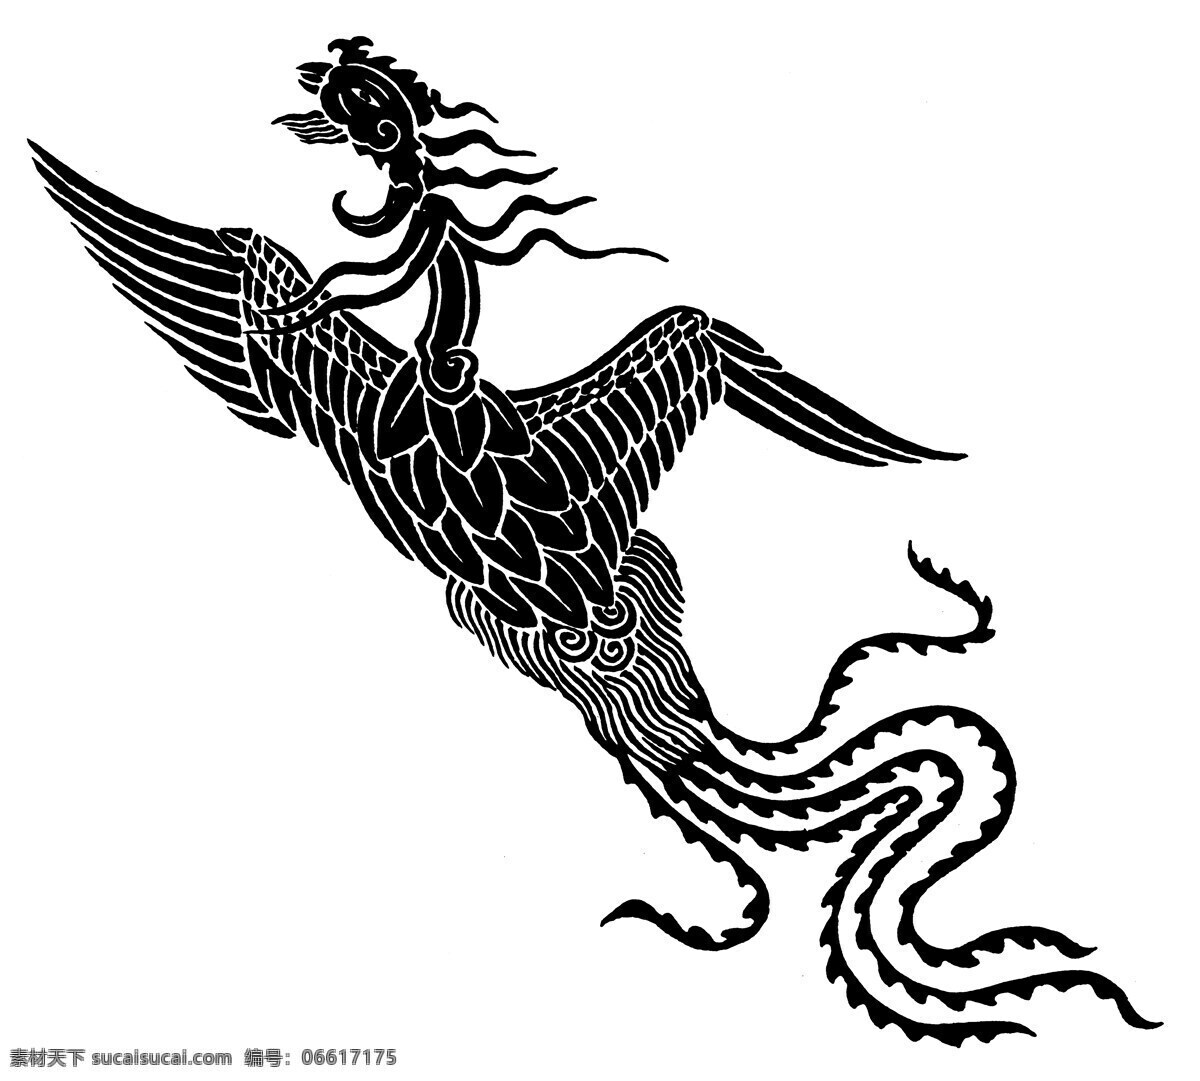 龙凤图案 元明时代图案 中国 传统 图案 31 设计素材 龙凤图纹 装饰图案 书画美术 白色